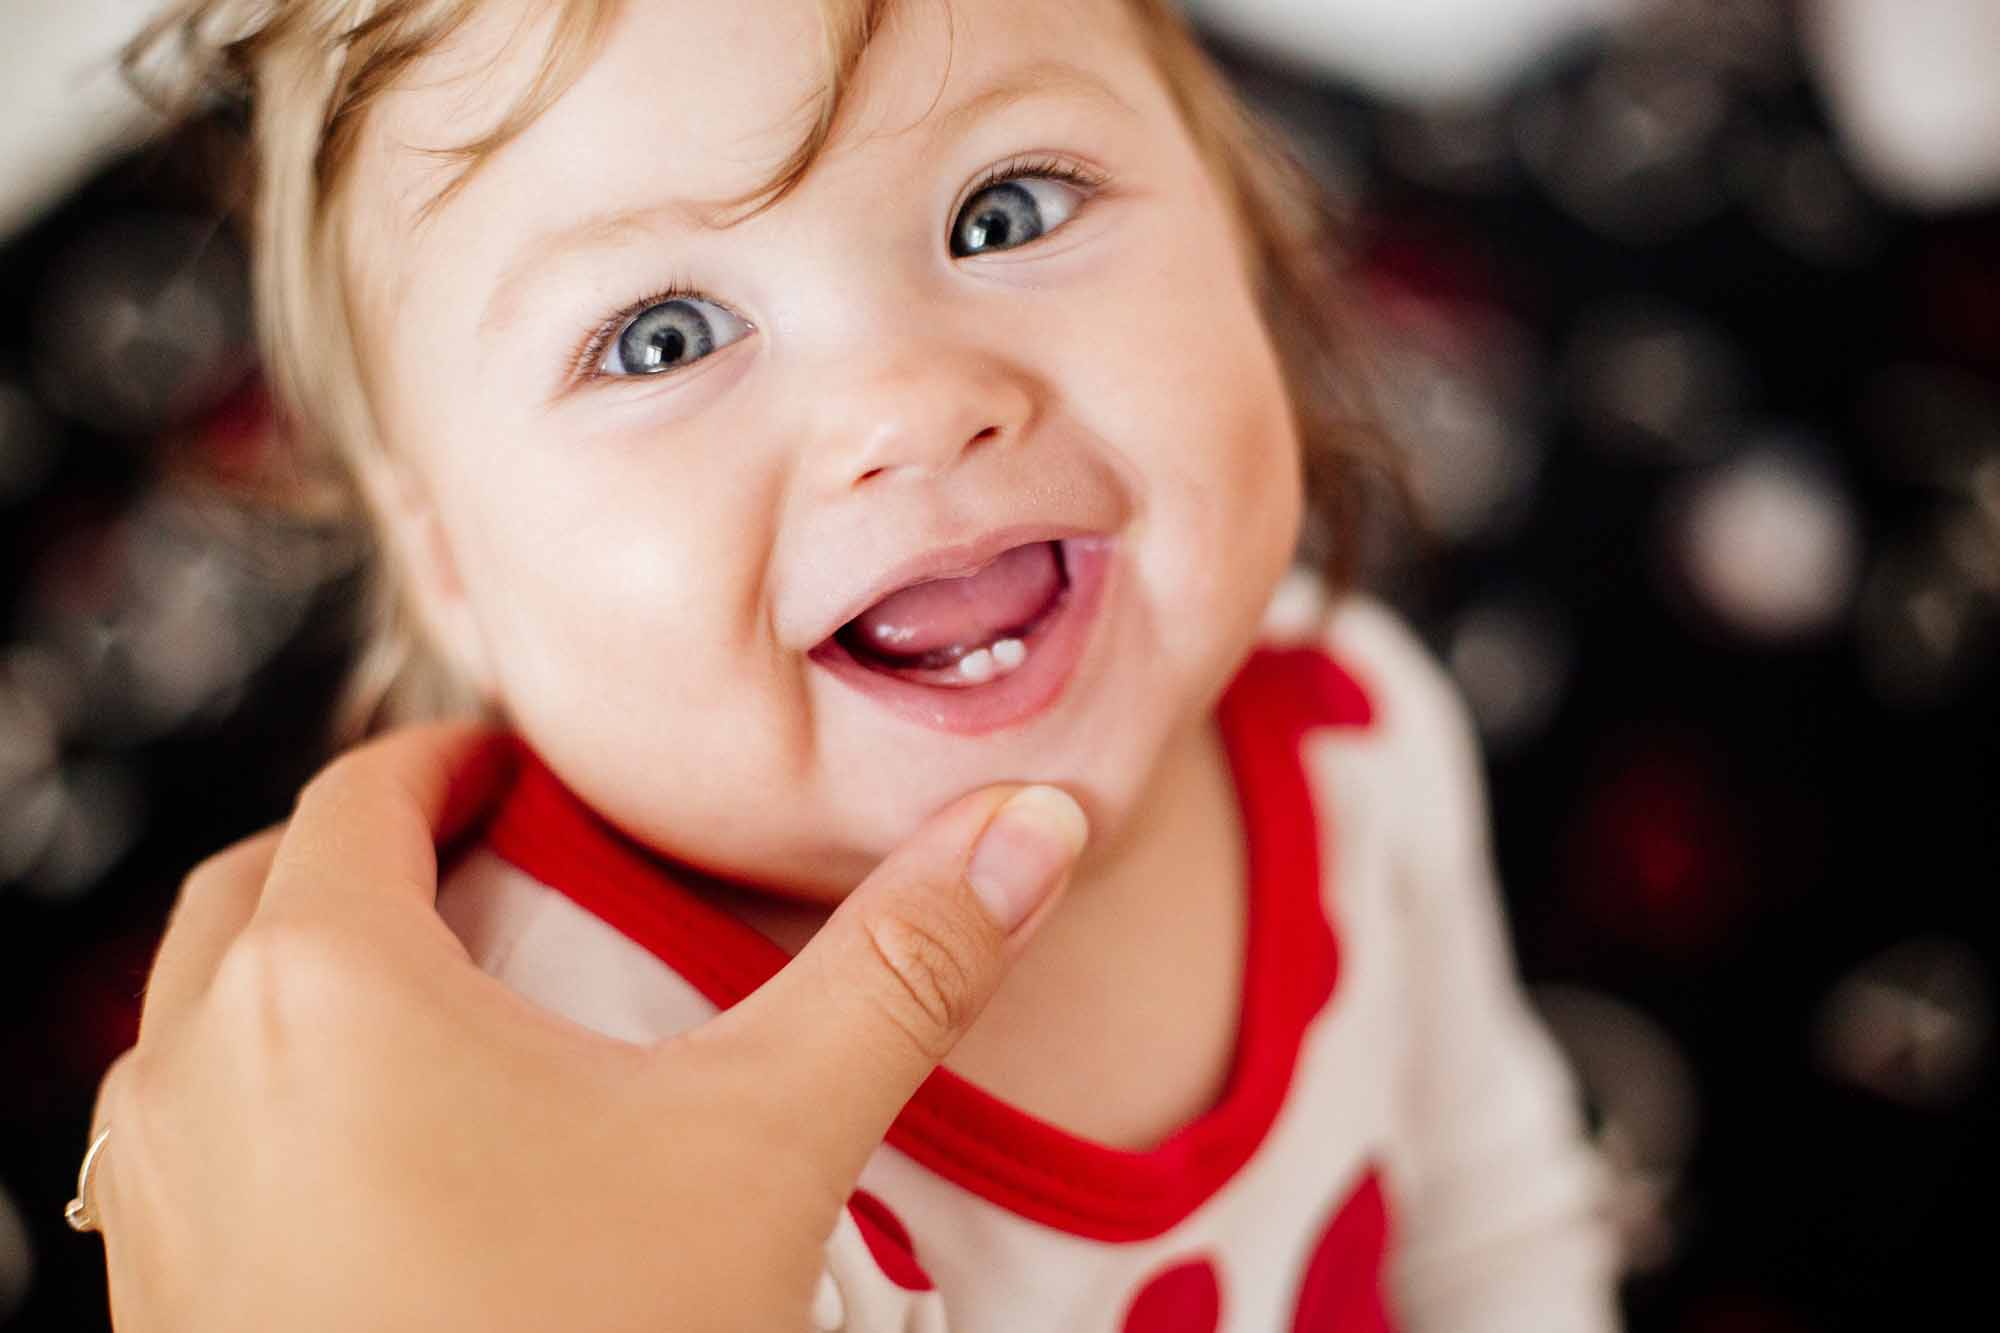 Baby with first teeth erupting - Smart Pediatric Dentistry, Utah